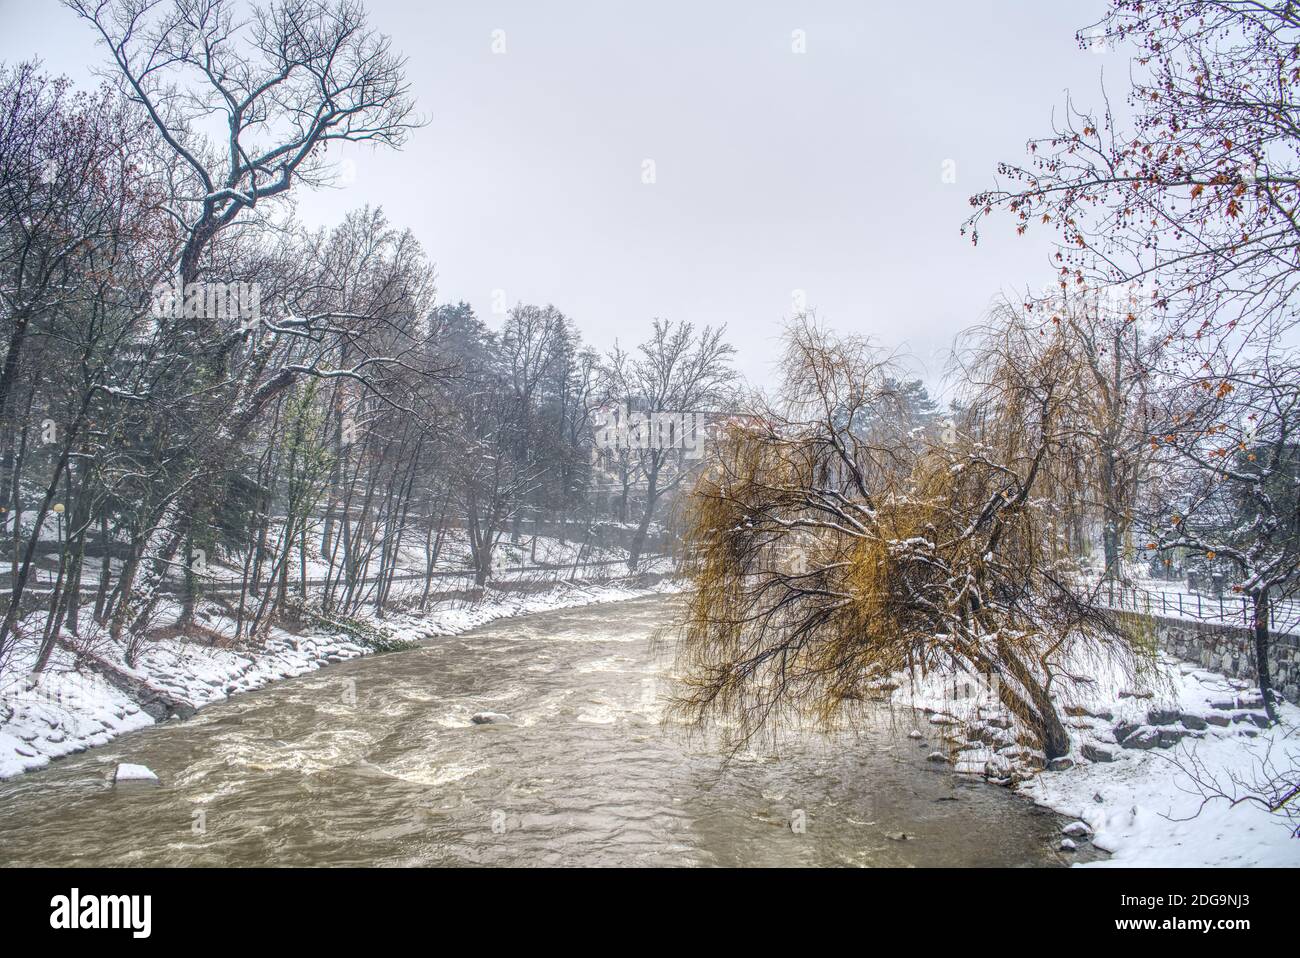 L'eau sale du fleuve passant après une forte chute de neige et sa promenade sur les côtés à Merano, en Italie, couverte de neige humide. Banque D'Images